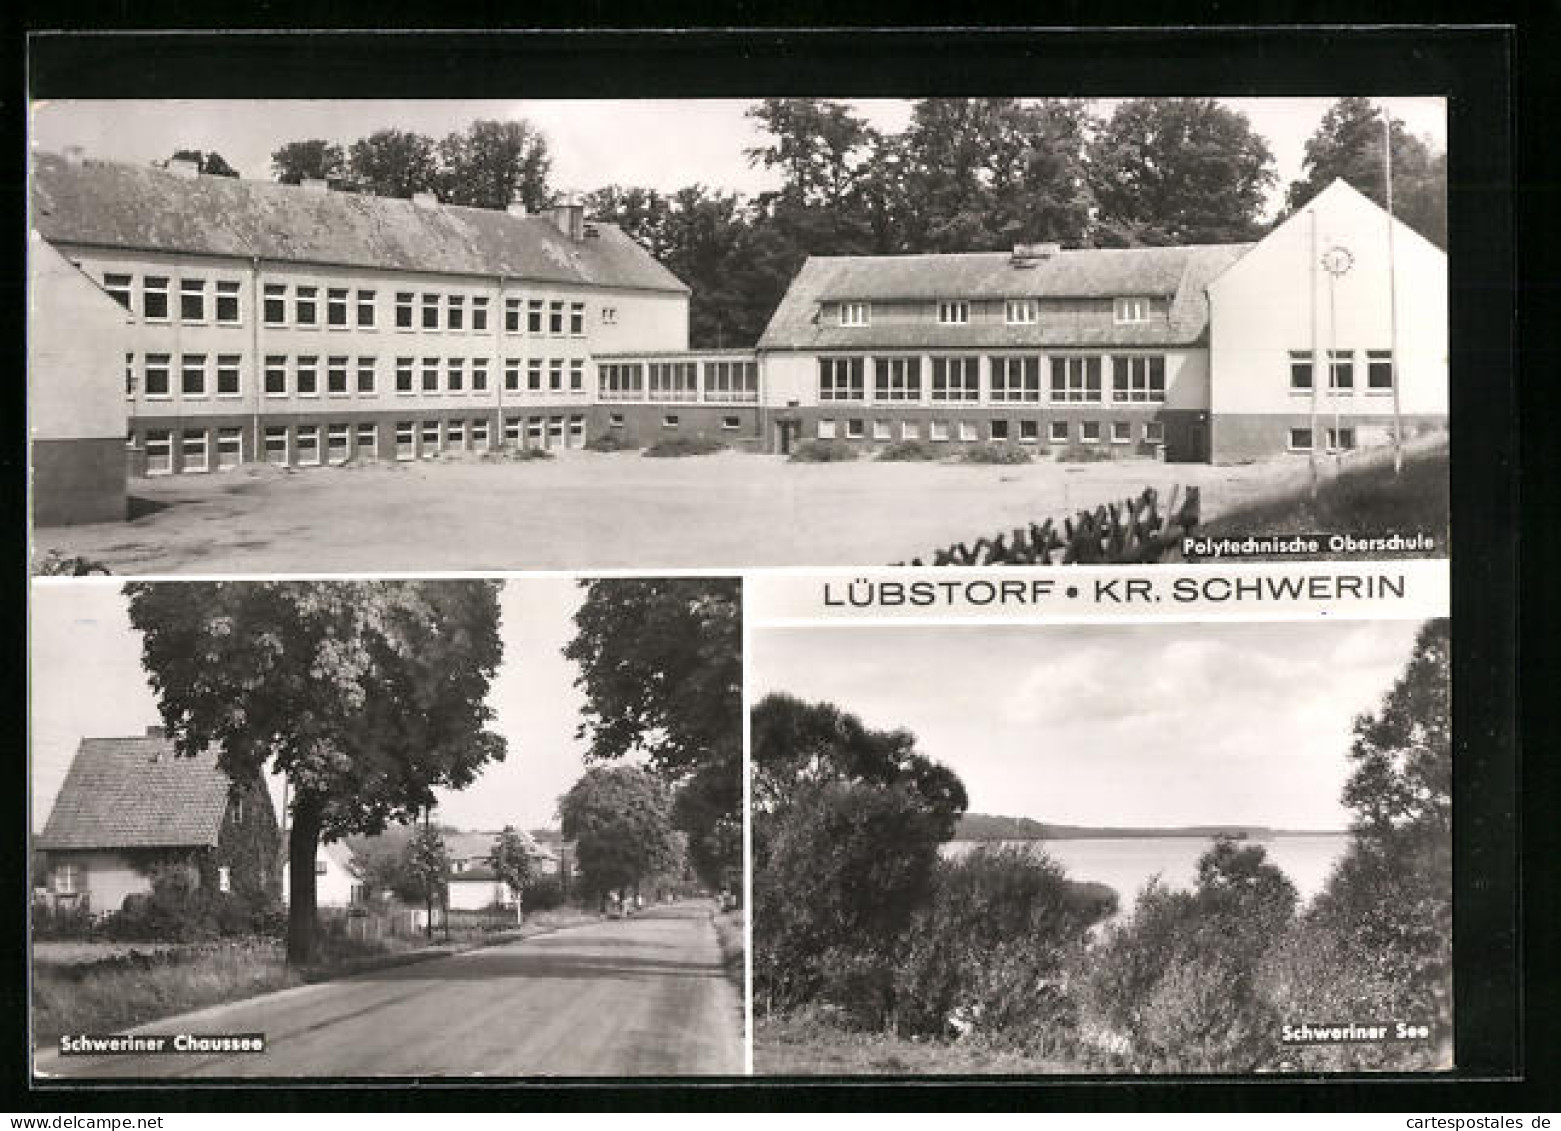 AK Lübstorf /Kr. Schwerin, Polytechnische Oberschule, Schweriner Chaussee, Schweriner See  - Schwerin